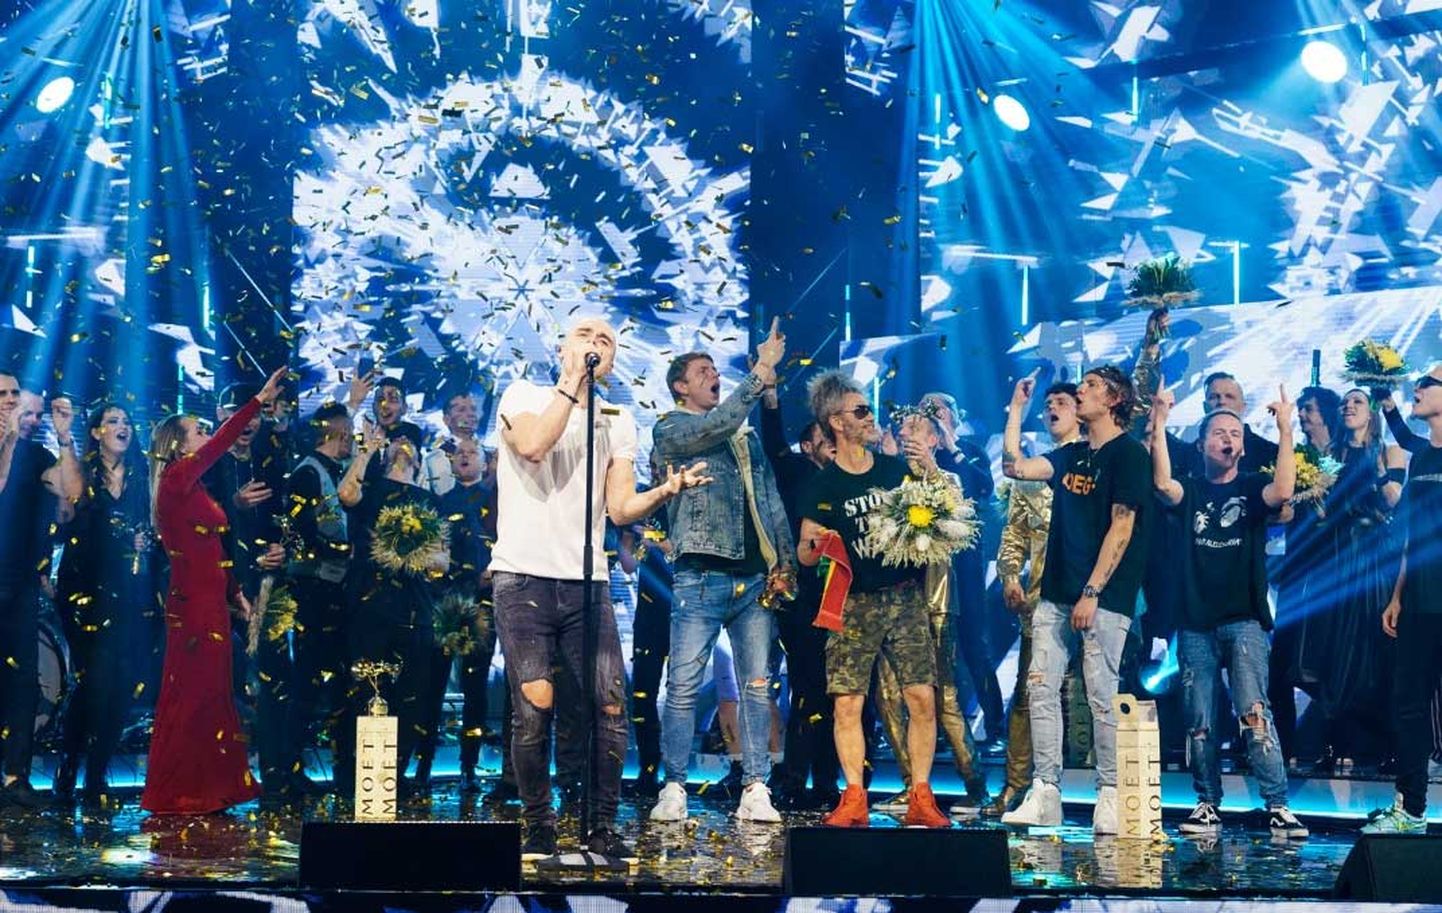 "Muzikālās bankas 2019" noslēgumā uzvarētājs Dons izpilda gada vērtīgāko dziesmu "Es nāktu mājās"